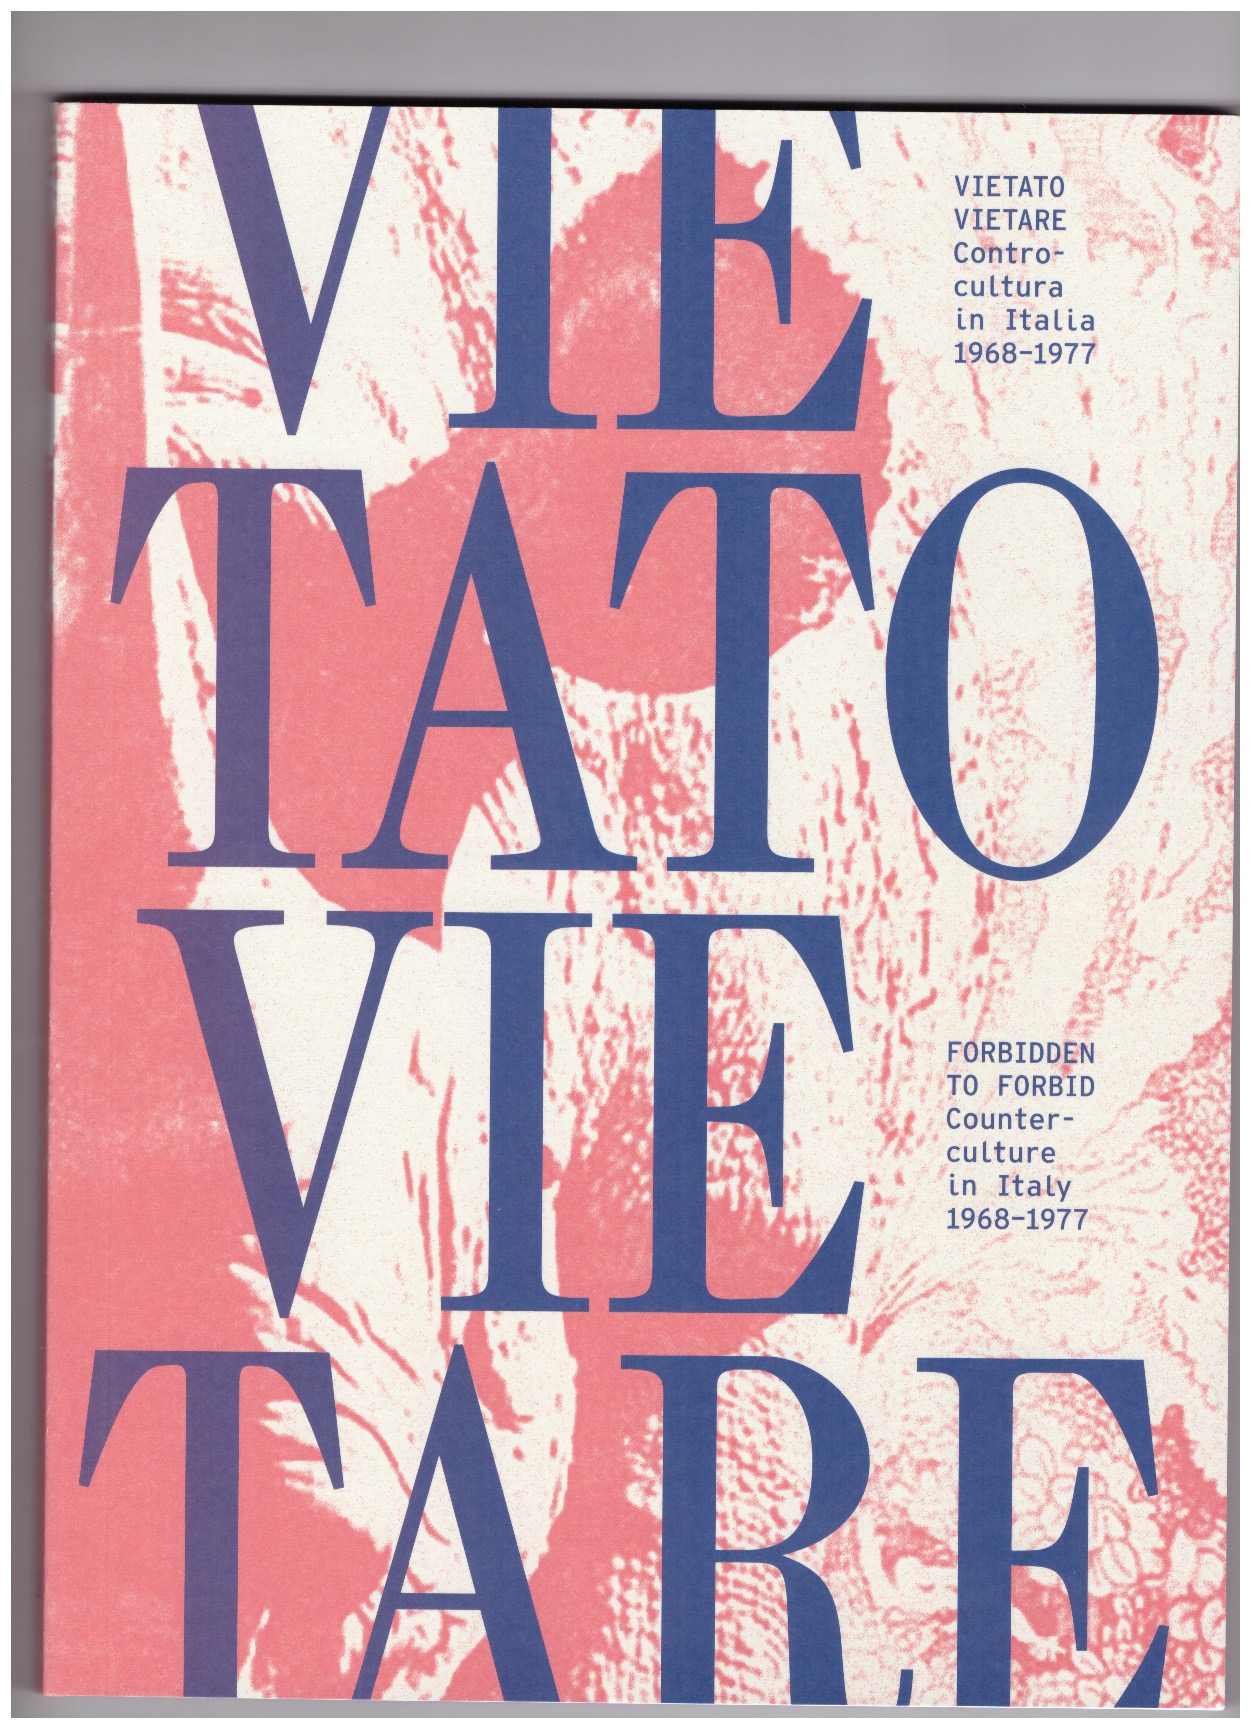 GAZZOTTI, Melania (ed.) - VIETATO VIETARE. Counterculture in Italy 1968-1977 (Forbidden to Forbid)